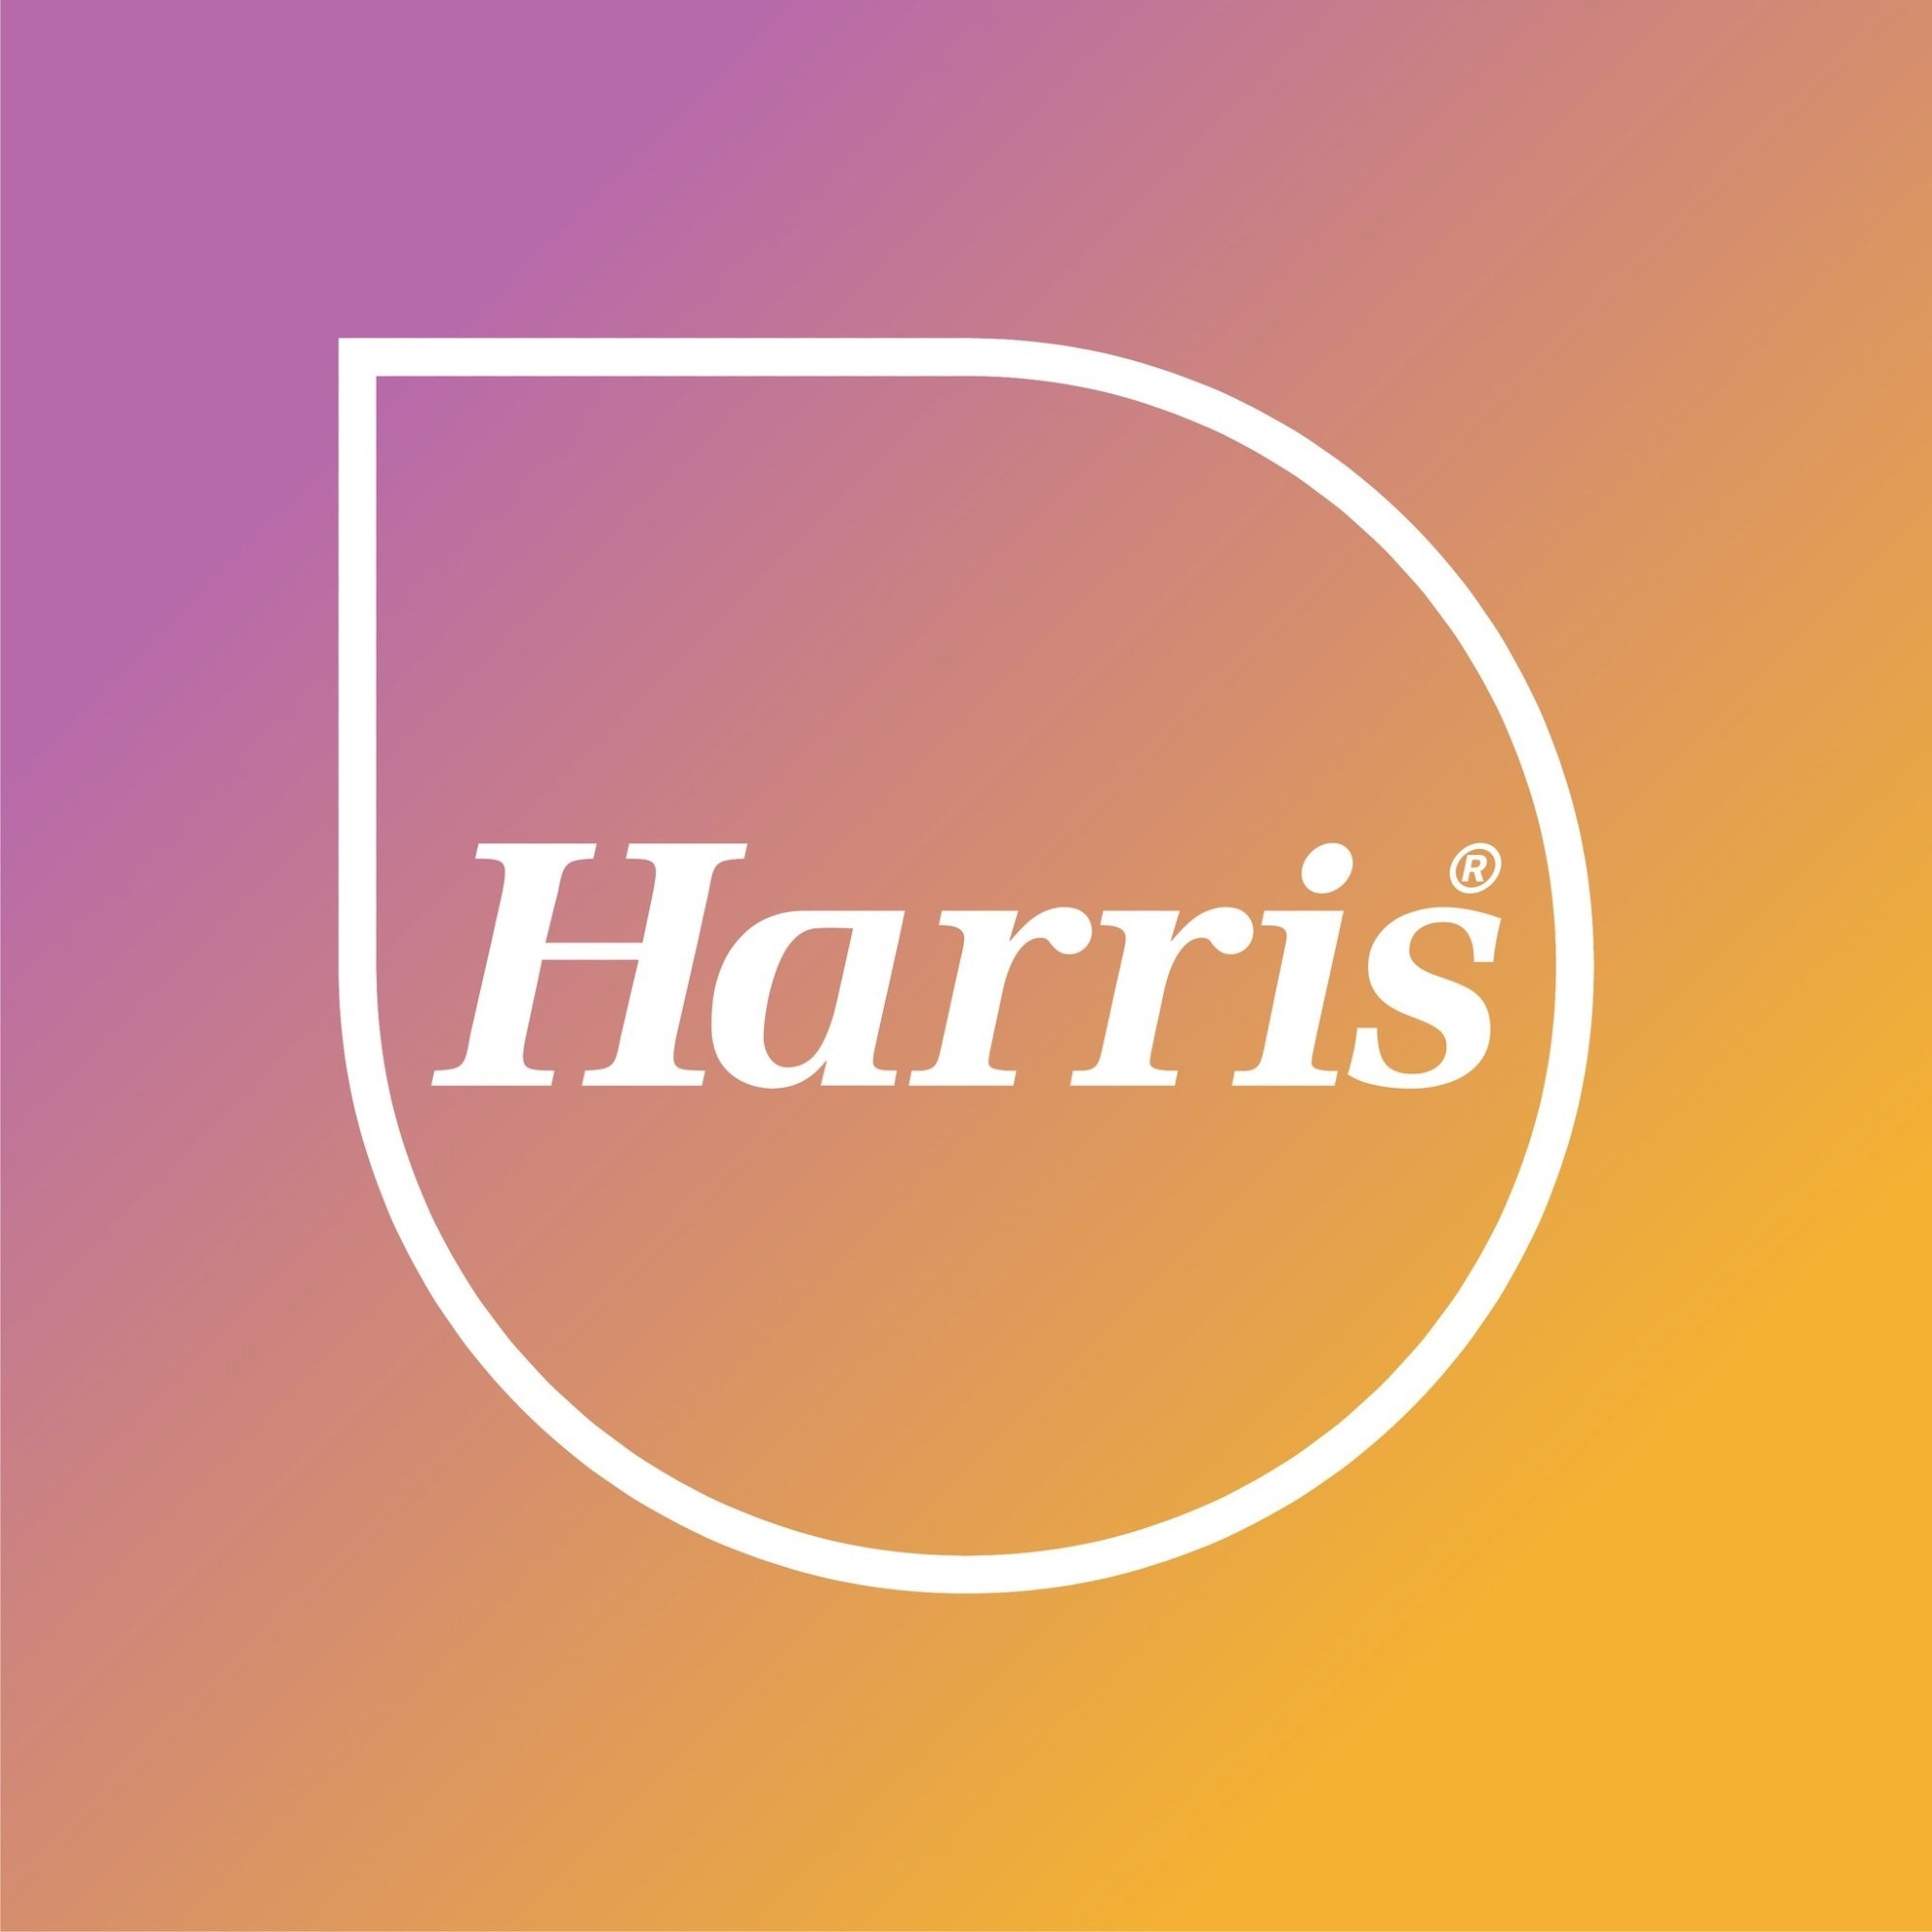 LG Harris & Co Ltd